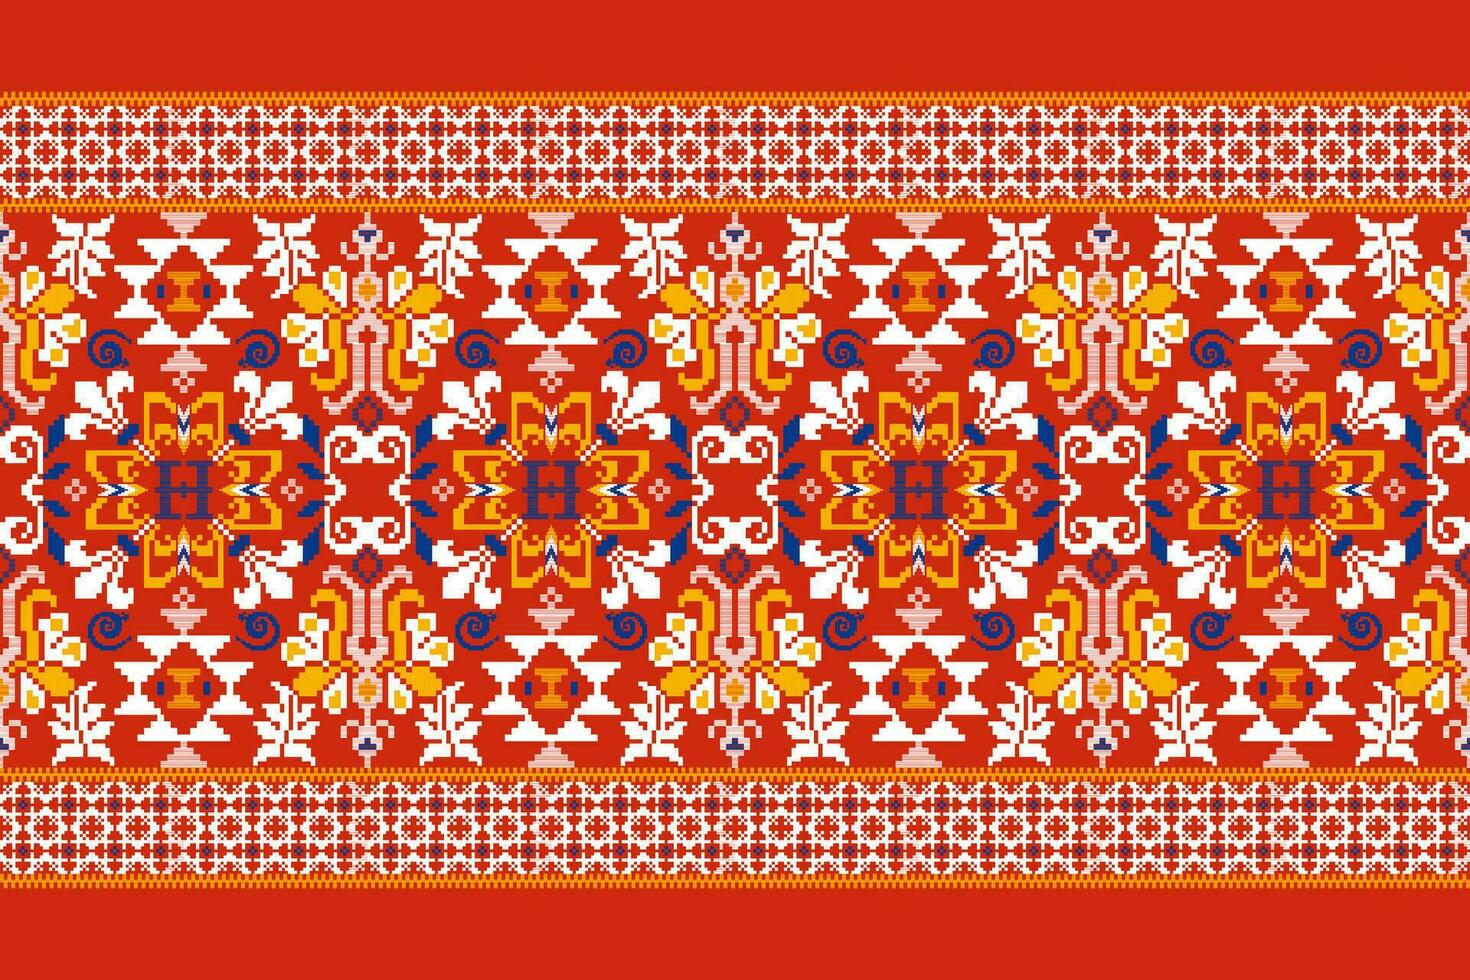 bloemen kruis steek borduurwerk Aan wit achtergrond.geometrisch etnisch oosters patroon traditioneel.azteken stijl abstract vector illustratie.ontwerp voor textuur, stof, kleding, verpakking, decoratie, sjaal.